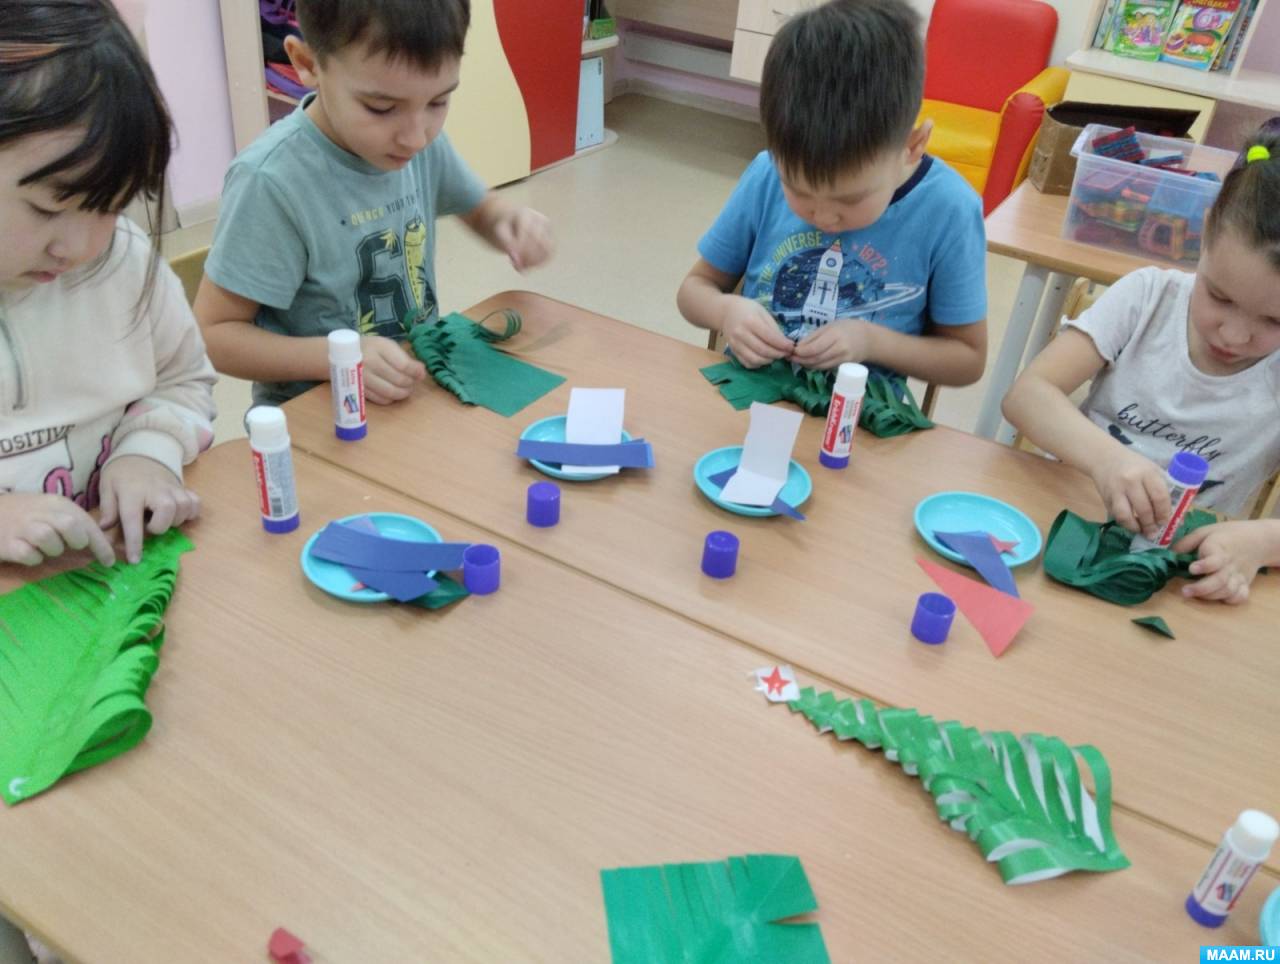 Конспект занятия по изготовлению игрушки на ёлку «Тигрёнок» в технике «оригами»